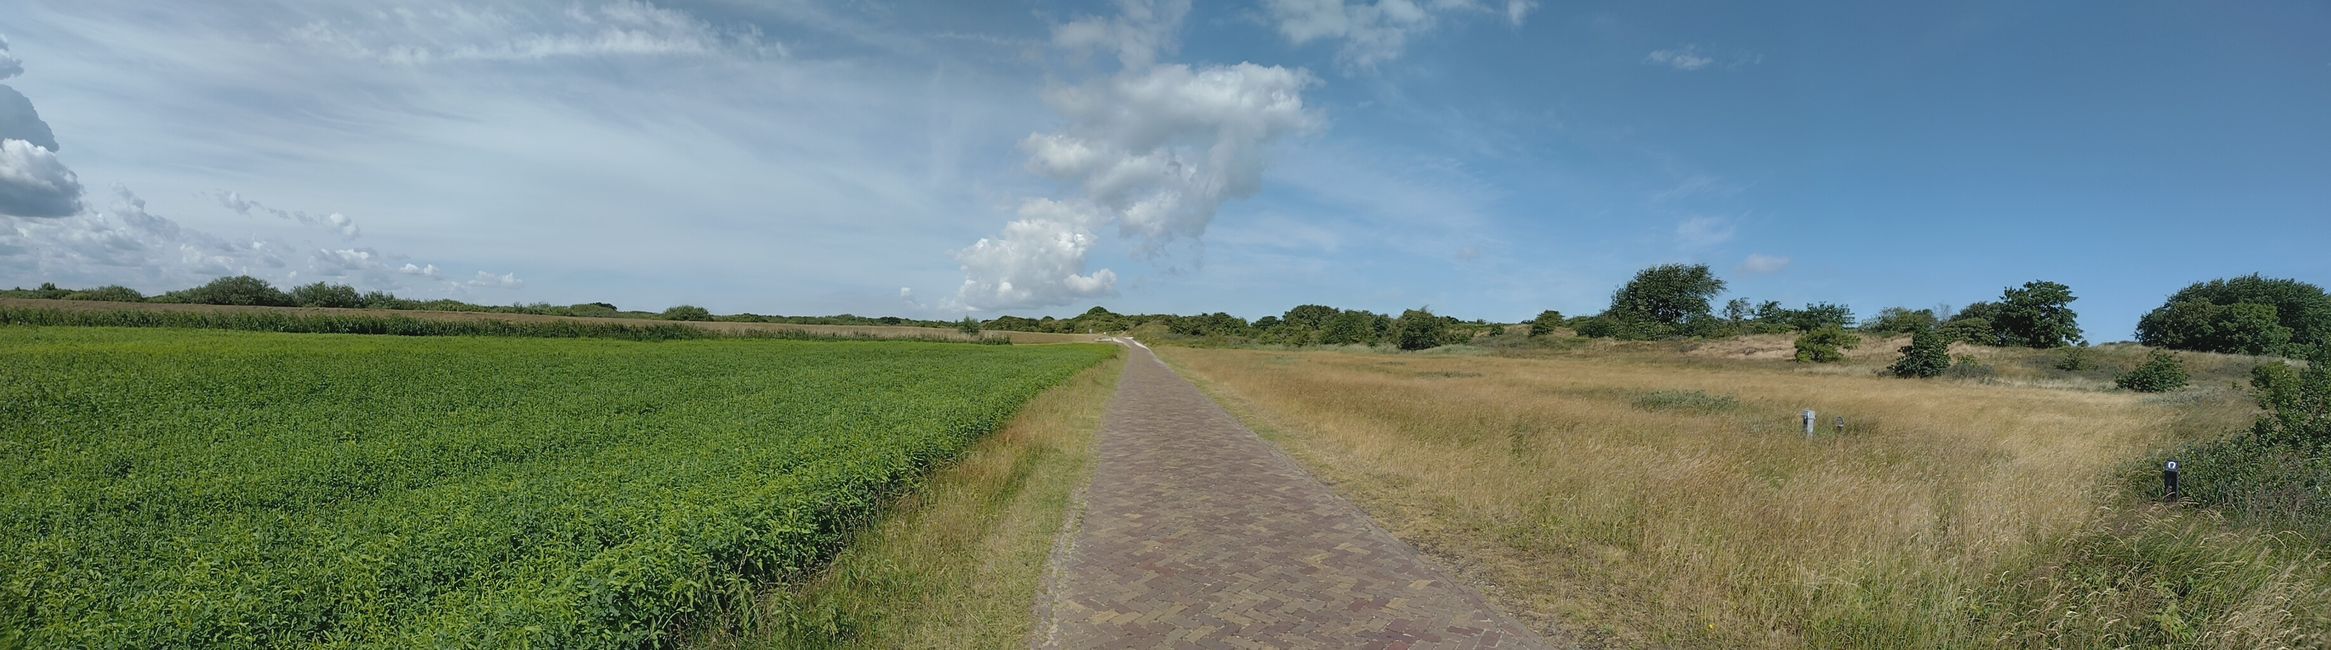 Day 23: Schiermonnikoog (19 km)